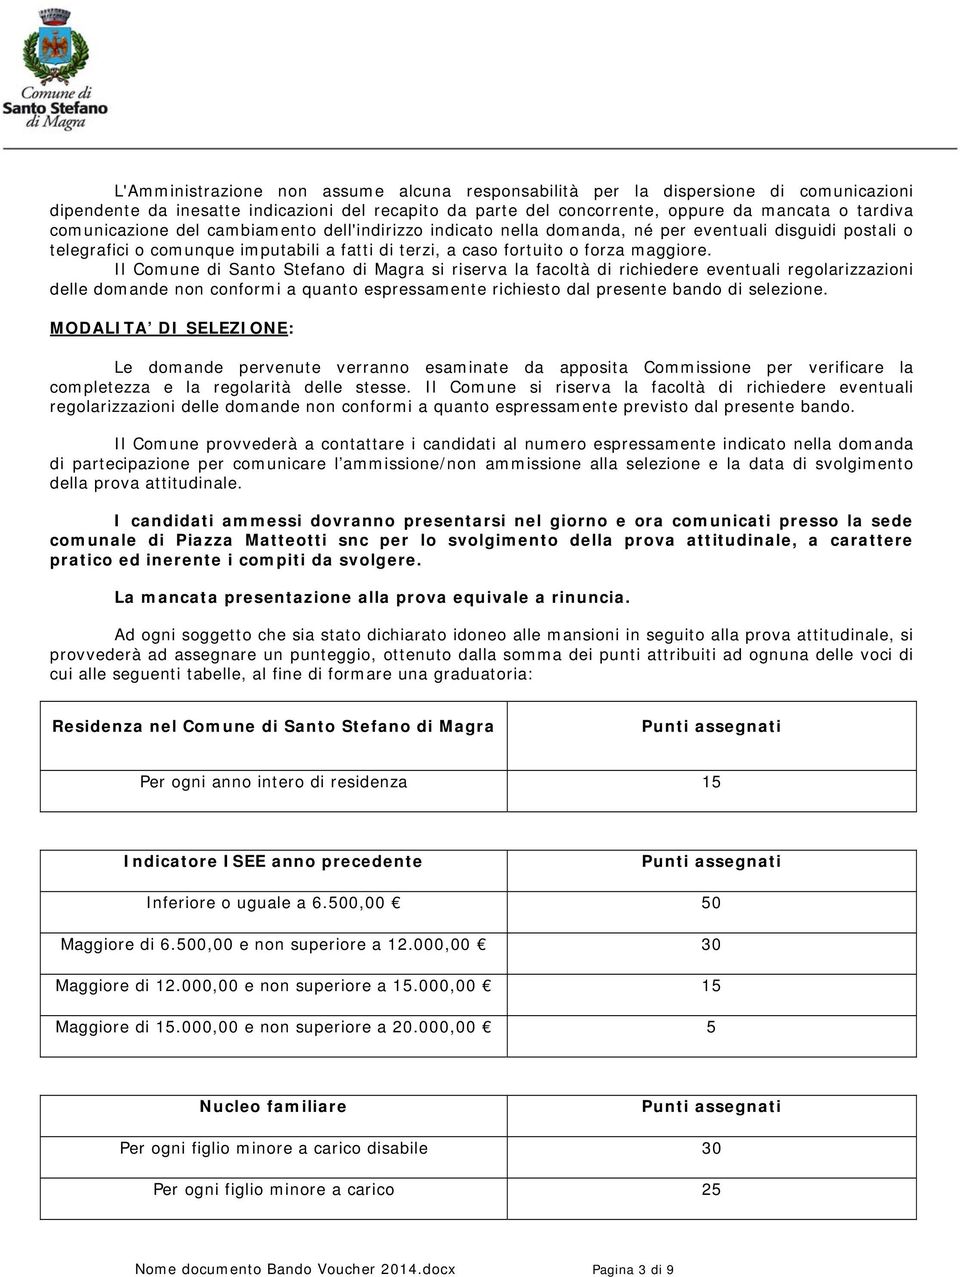 Il Comune di Santo Stefano di Magra si riserva la facoltà di richiedere eventuali regolarizzazioni delle domande non conformi a quanto espressamente richiesto dal presente bando di selezione.